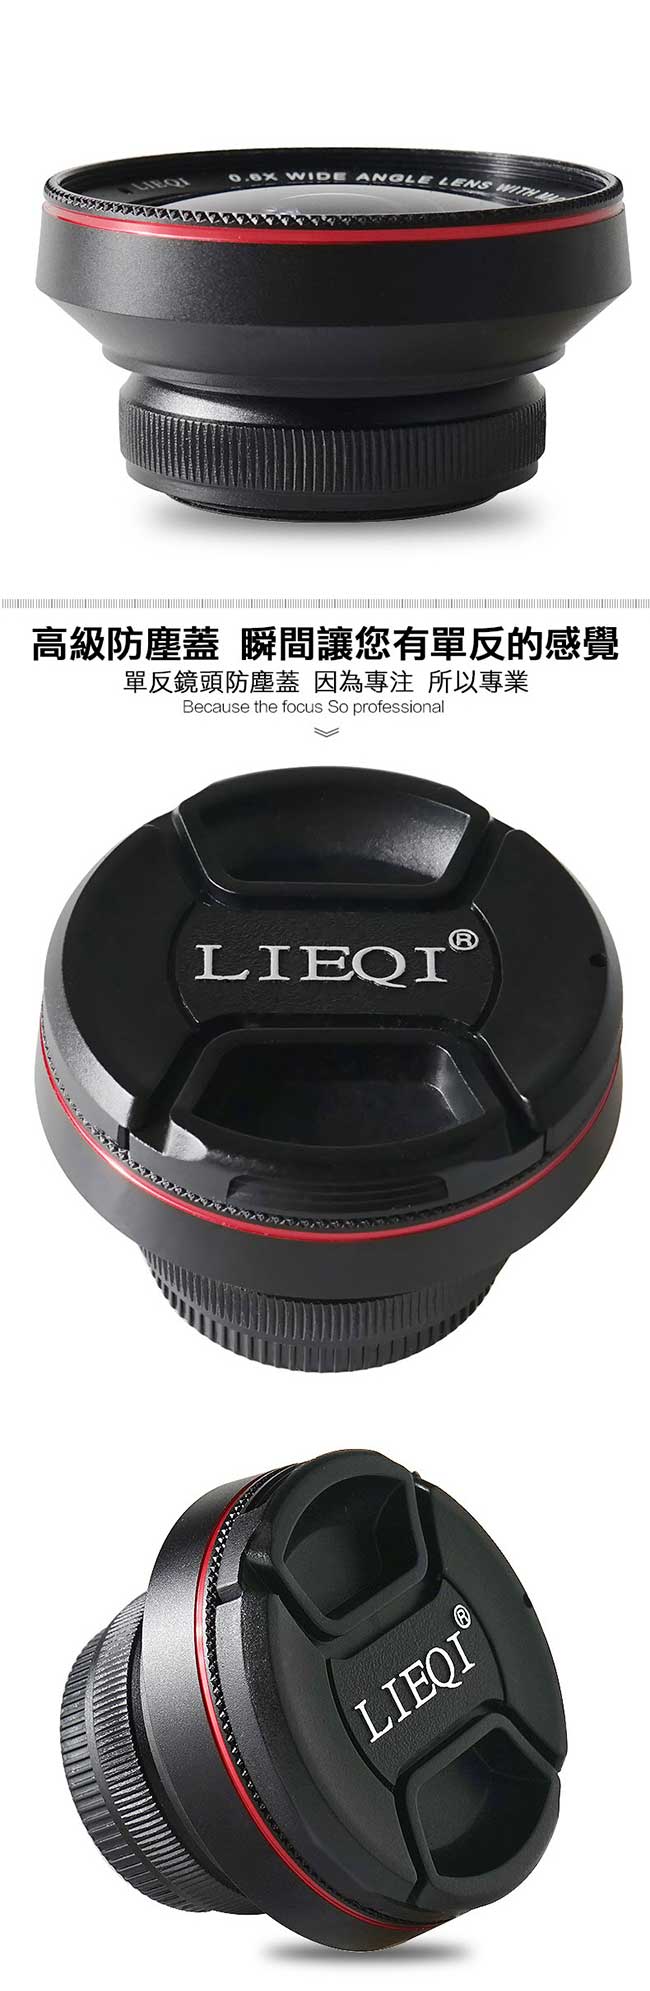 LIEQI LQ-025 雙鏡頭手機專用新設計 0.6X大廣角+10X微距 二合一鏡頭